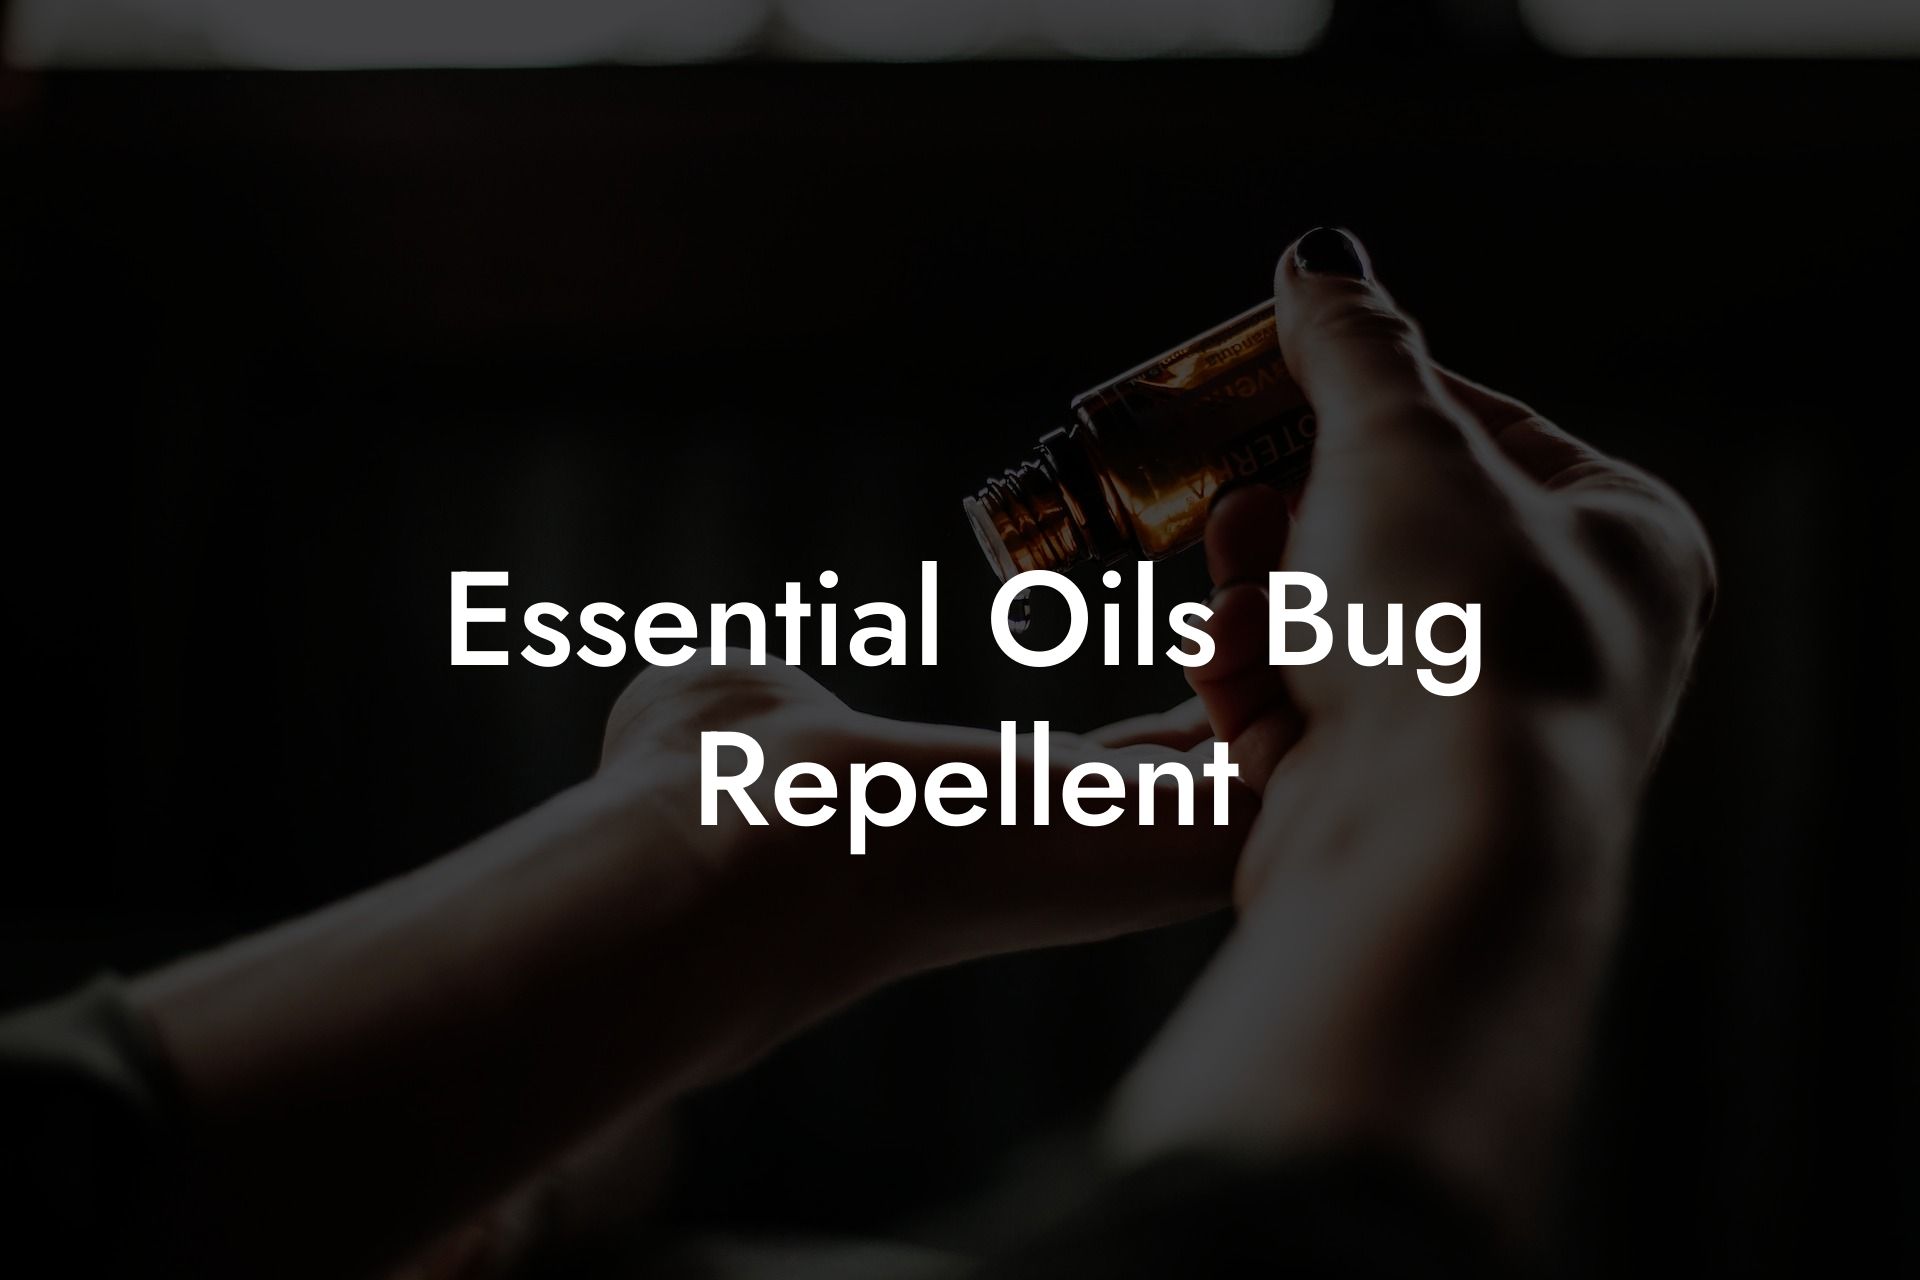 Essential Oils Bug Repellent